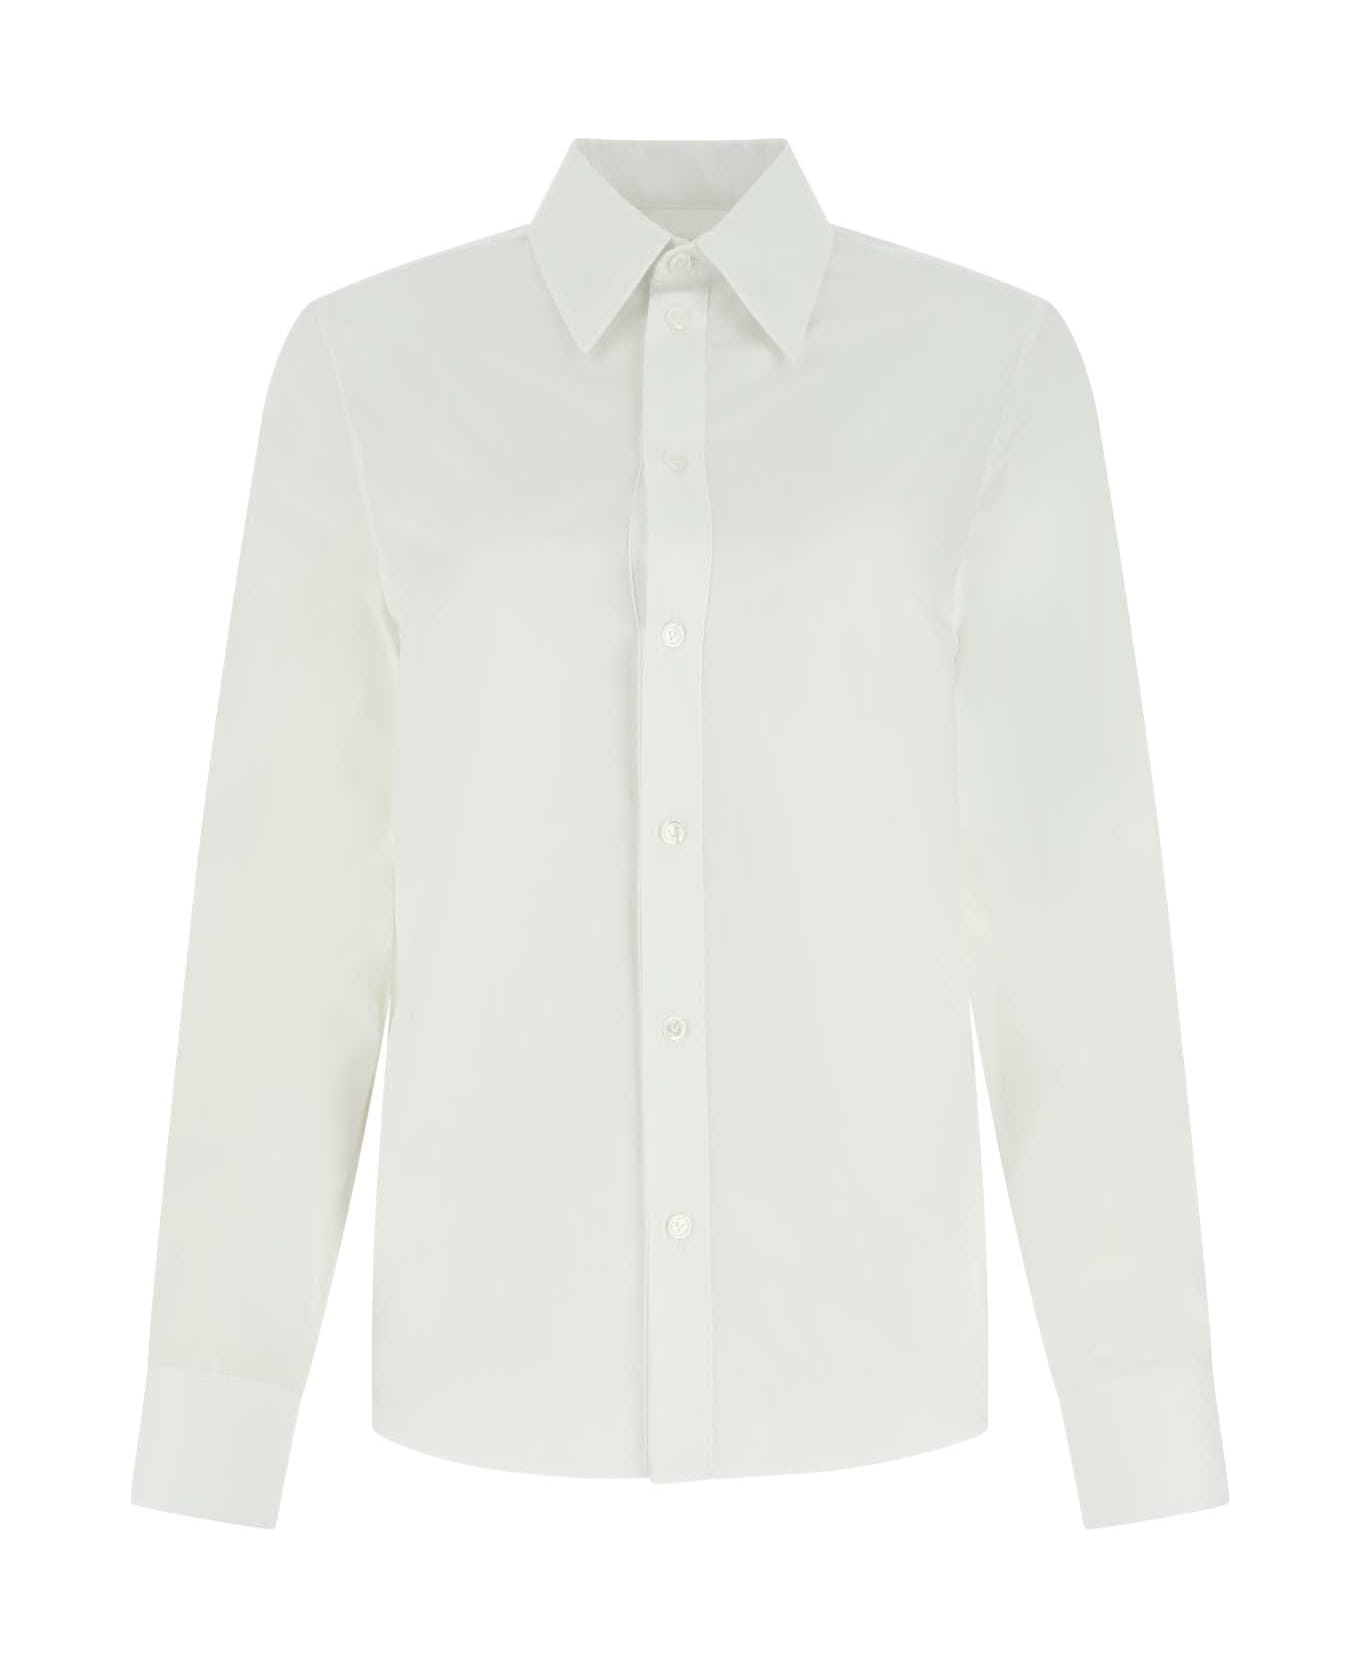 Bottega Veneta White Poplin Shirt - 9000 シャツ